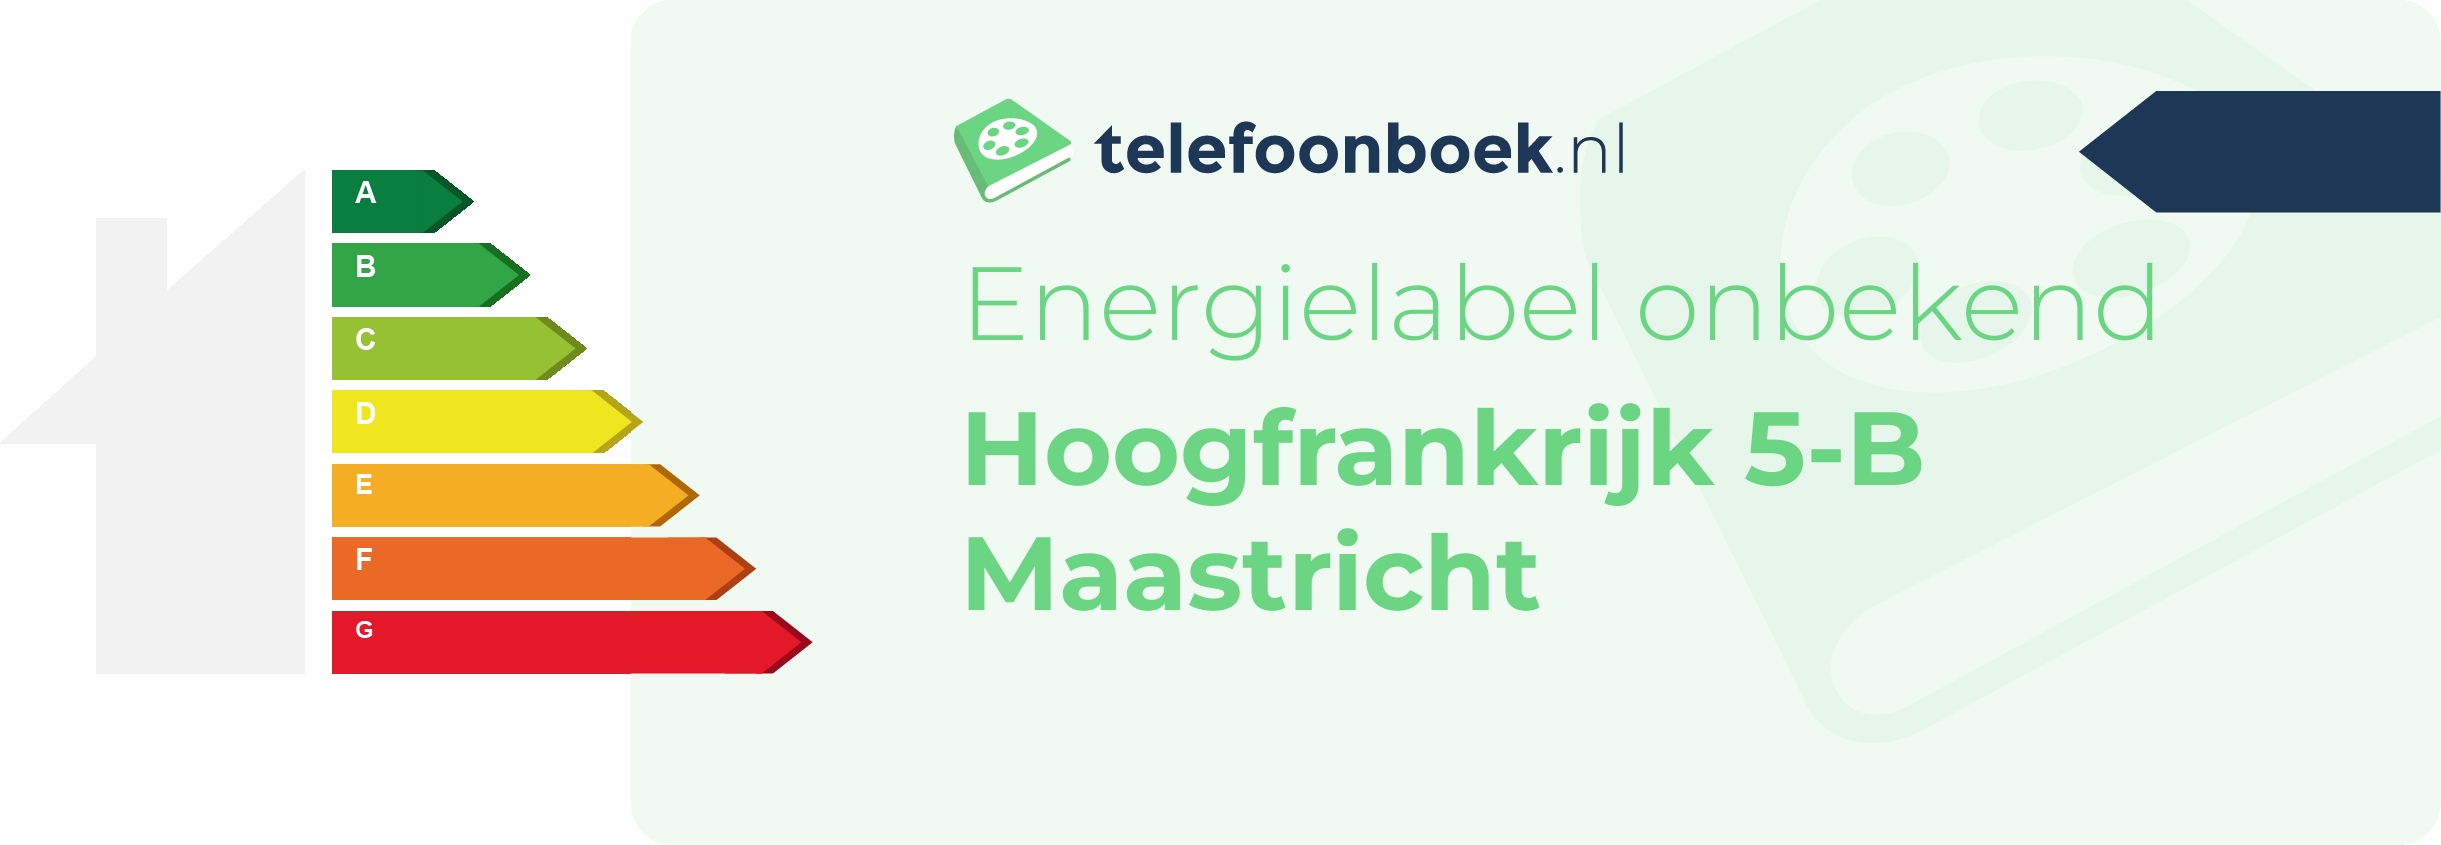 Energielabel Hoogfrankrijk 5-B Maastricht